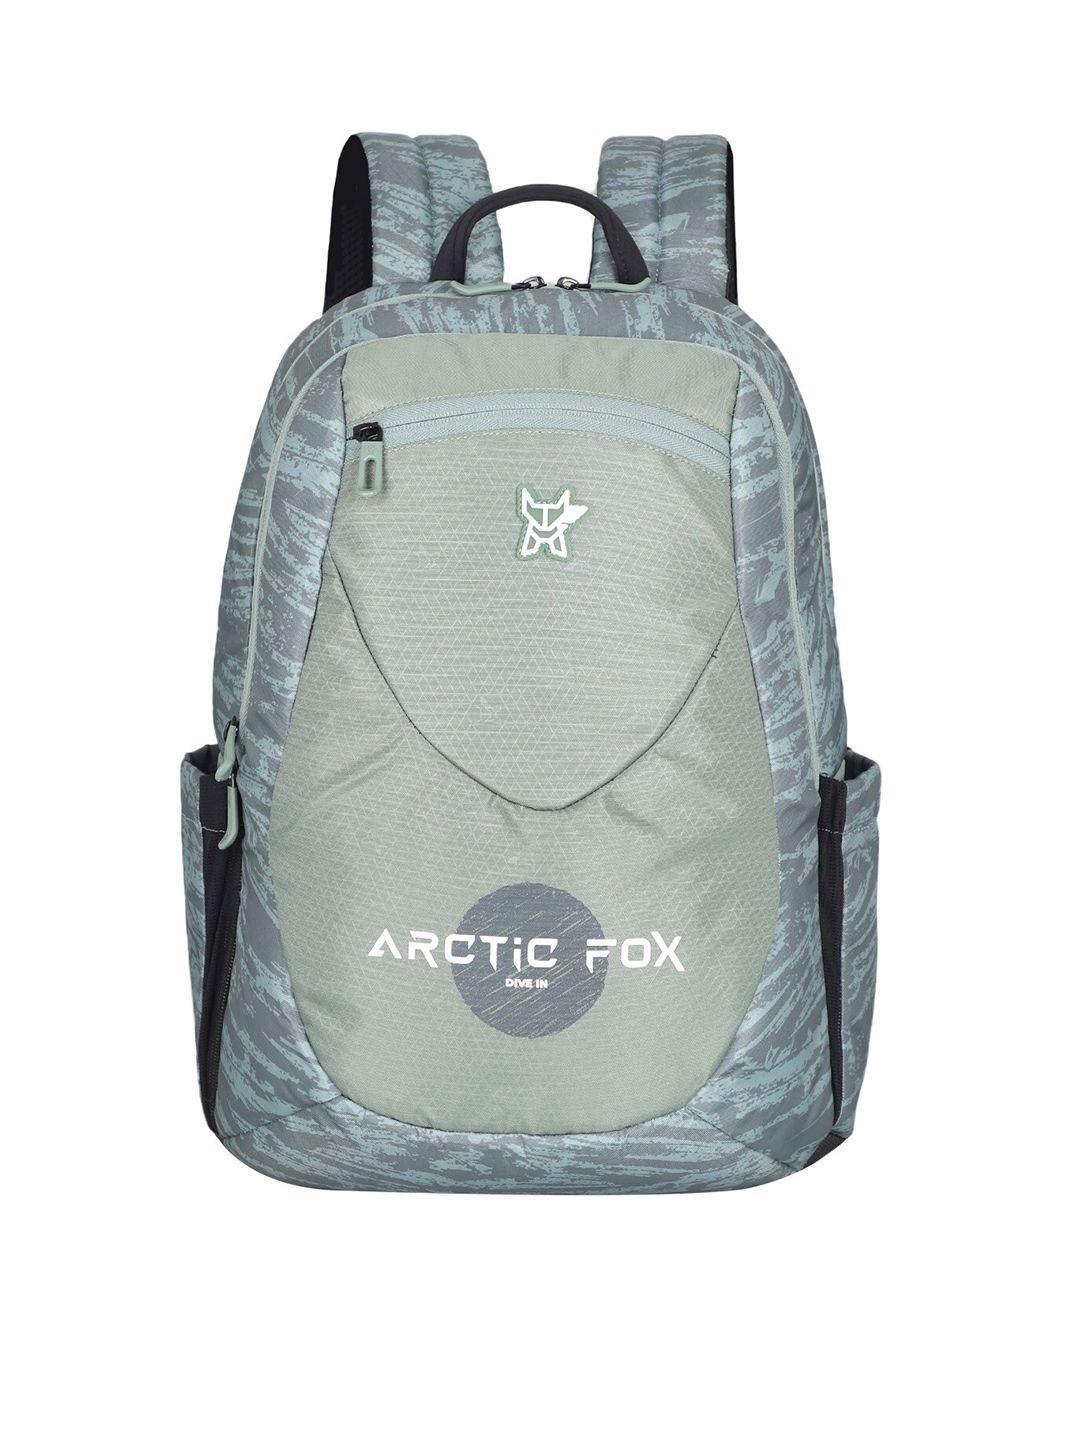 arctic fox printed water resistant laptop bag